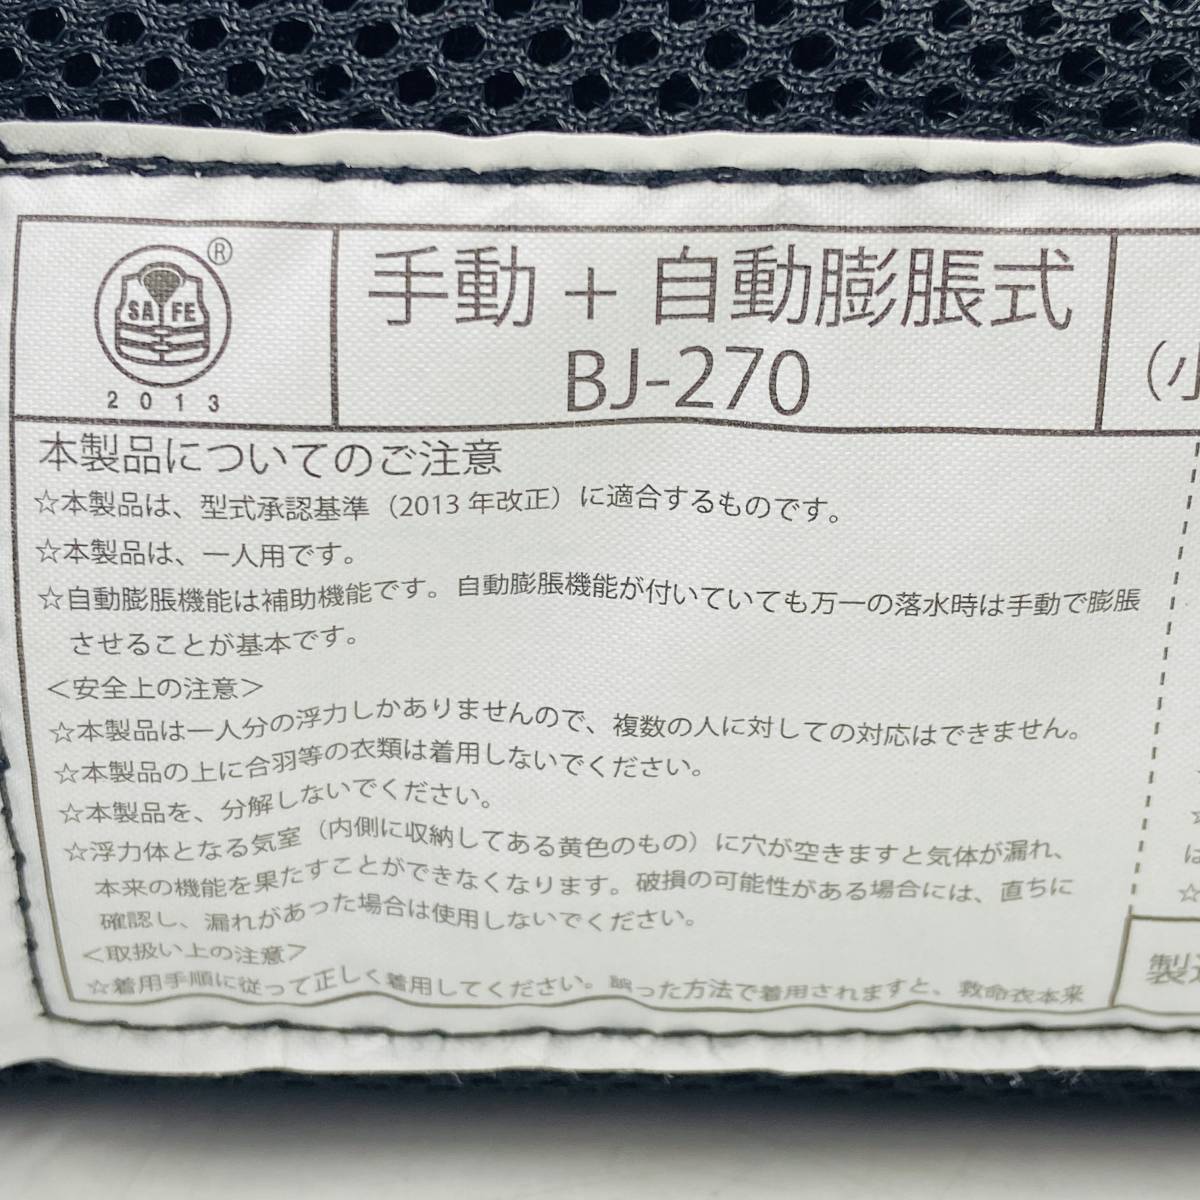 (23841)□BASS BRIGADE BJ-270型 ライフジャケット 作業用救命胴衣 中古品_画像6